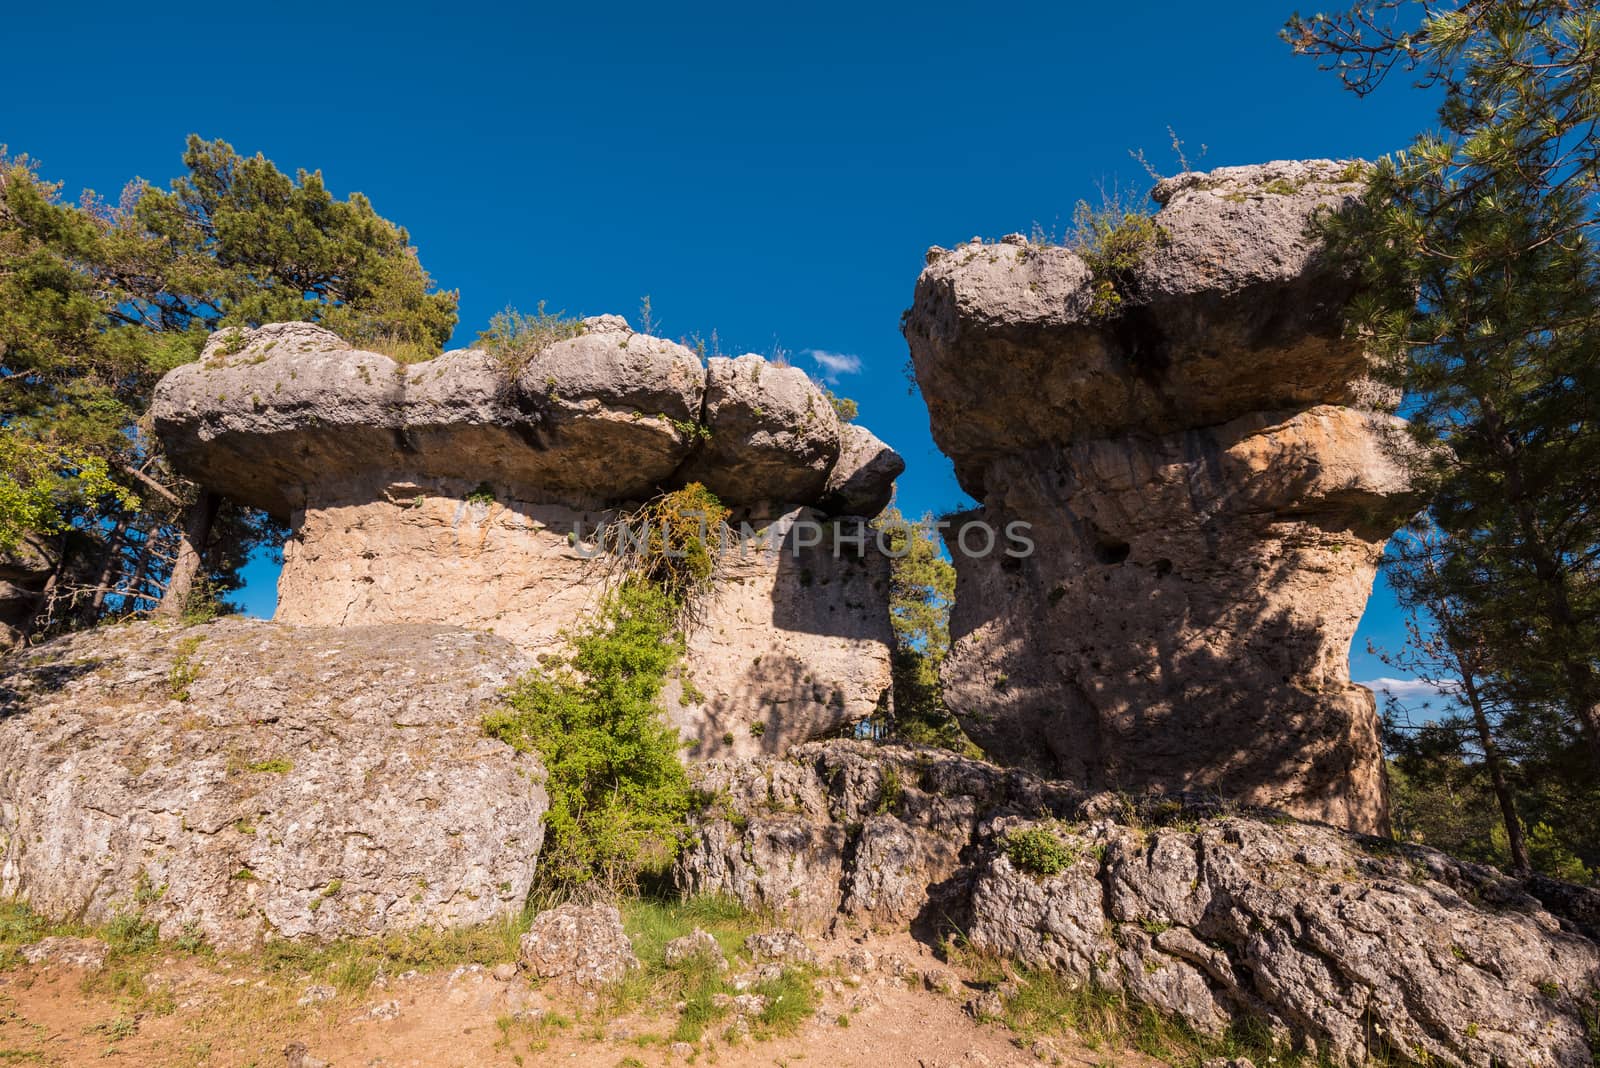 La Ciudad encantada. The enchanted city natural park, group of crapicious forms limestone rocks in Cuenca, Spain. by HERRAEZ